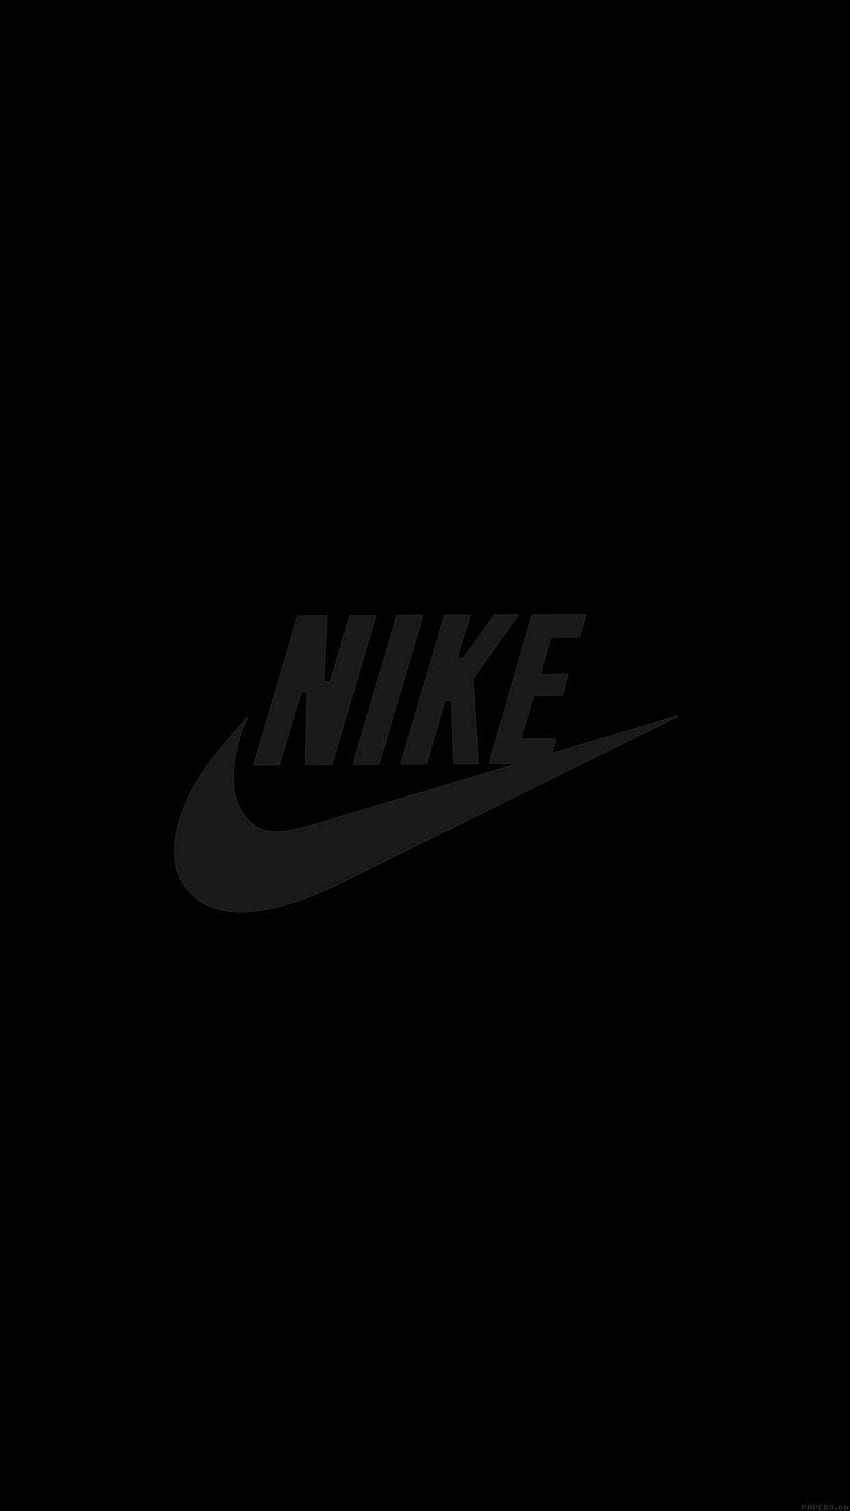 38+] Nike Android Wallpapers - WallpaperSafari